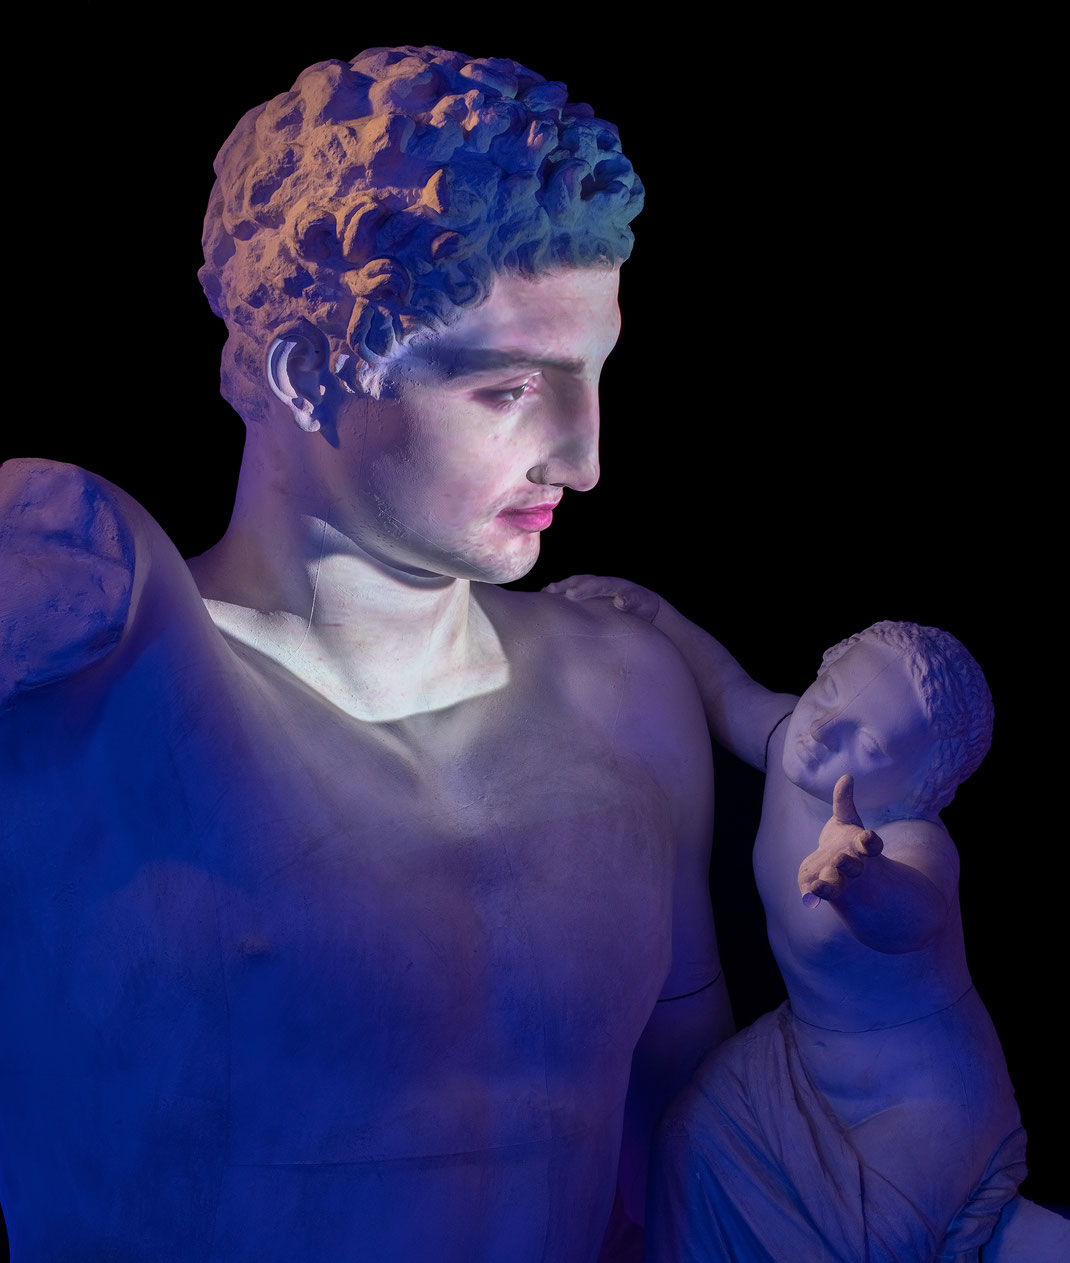 hermes-von-olympia-dionysos-skulptur-praxiteles-interaktive-sprechende-statue-griechische-mythologie-psychopompos-schauspieler-malte-homfeldt